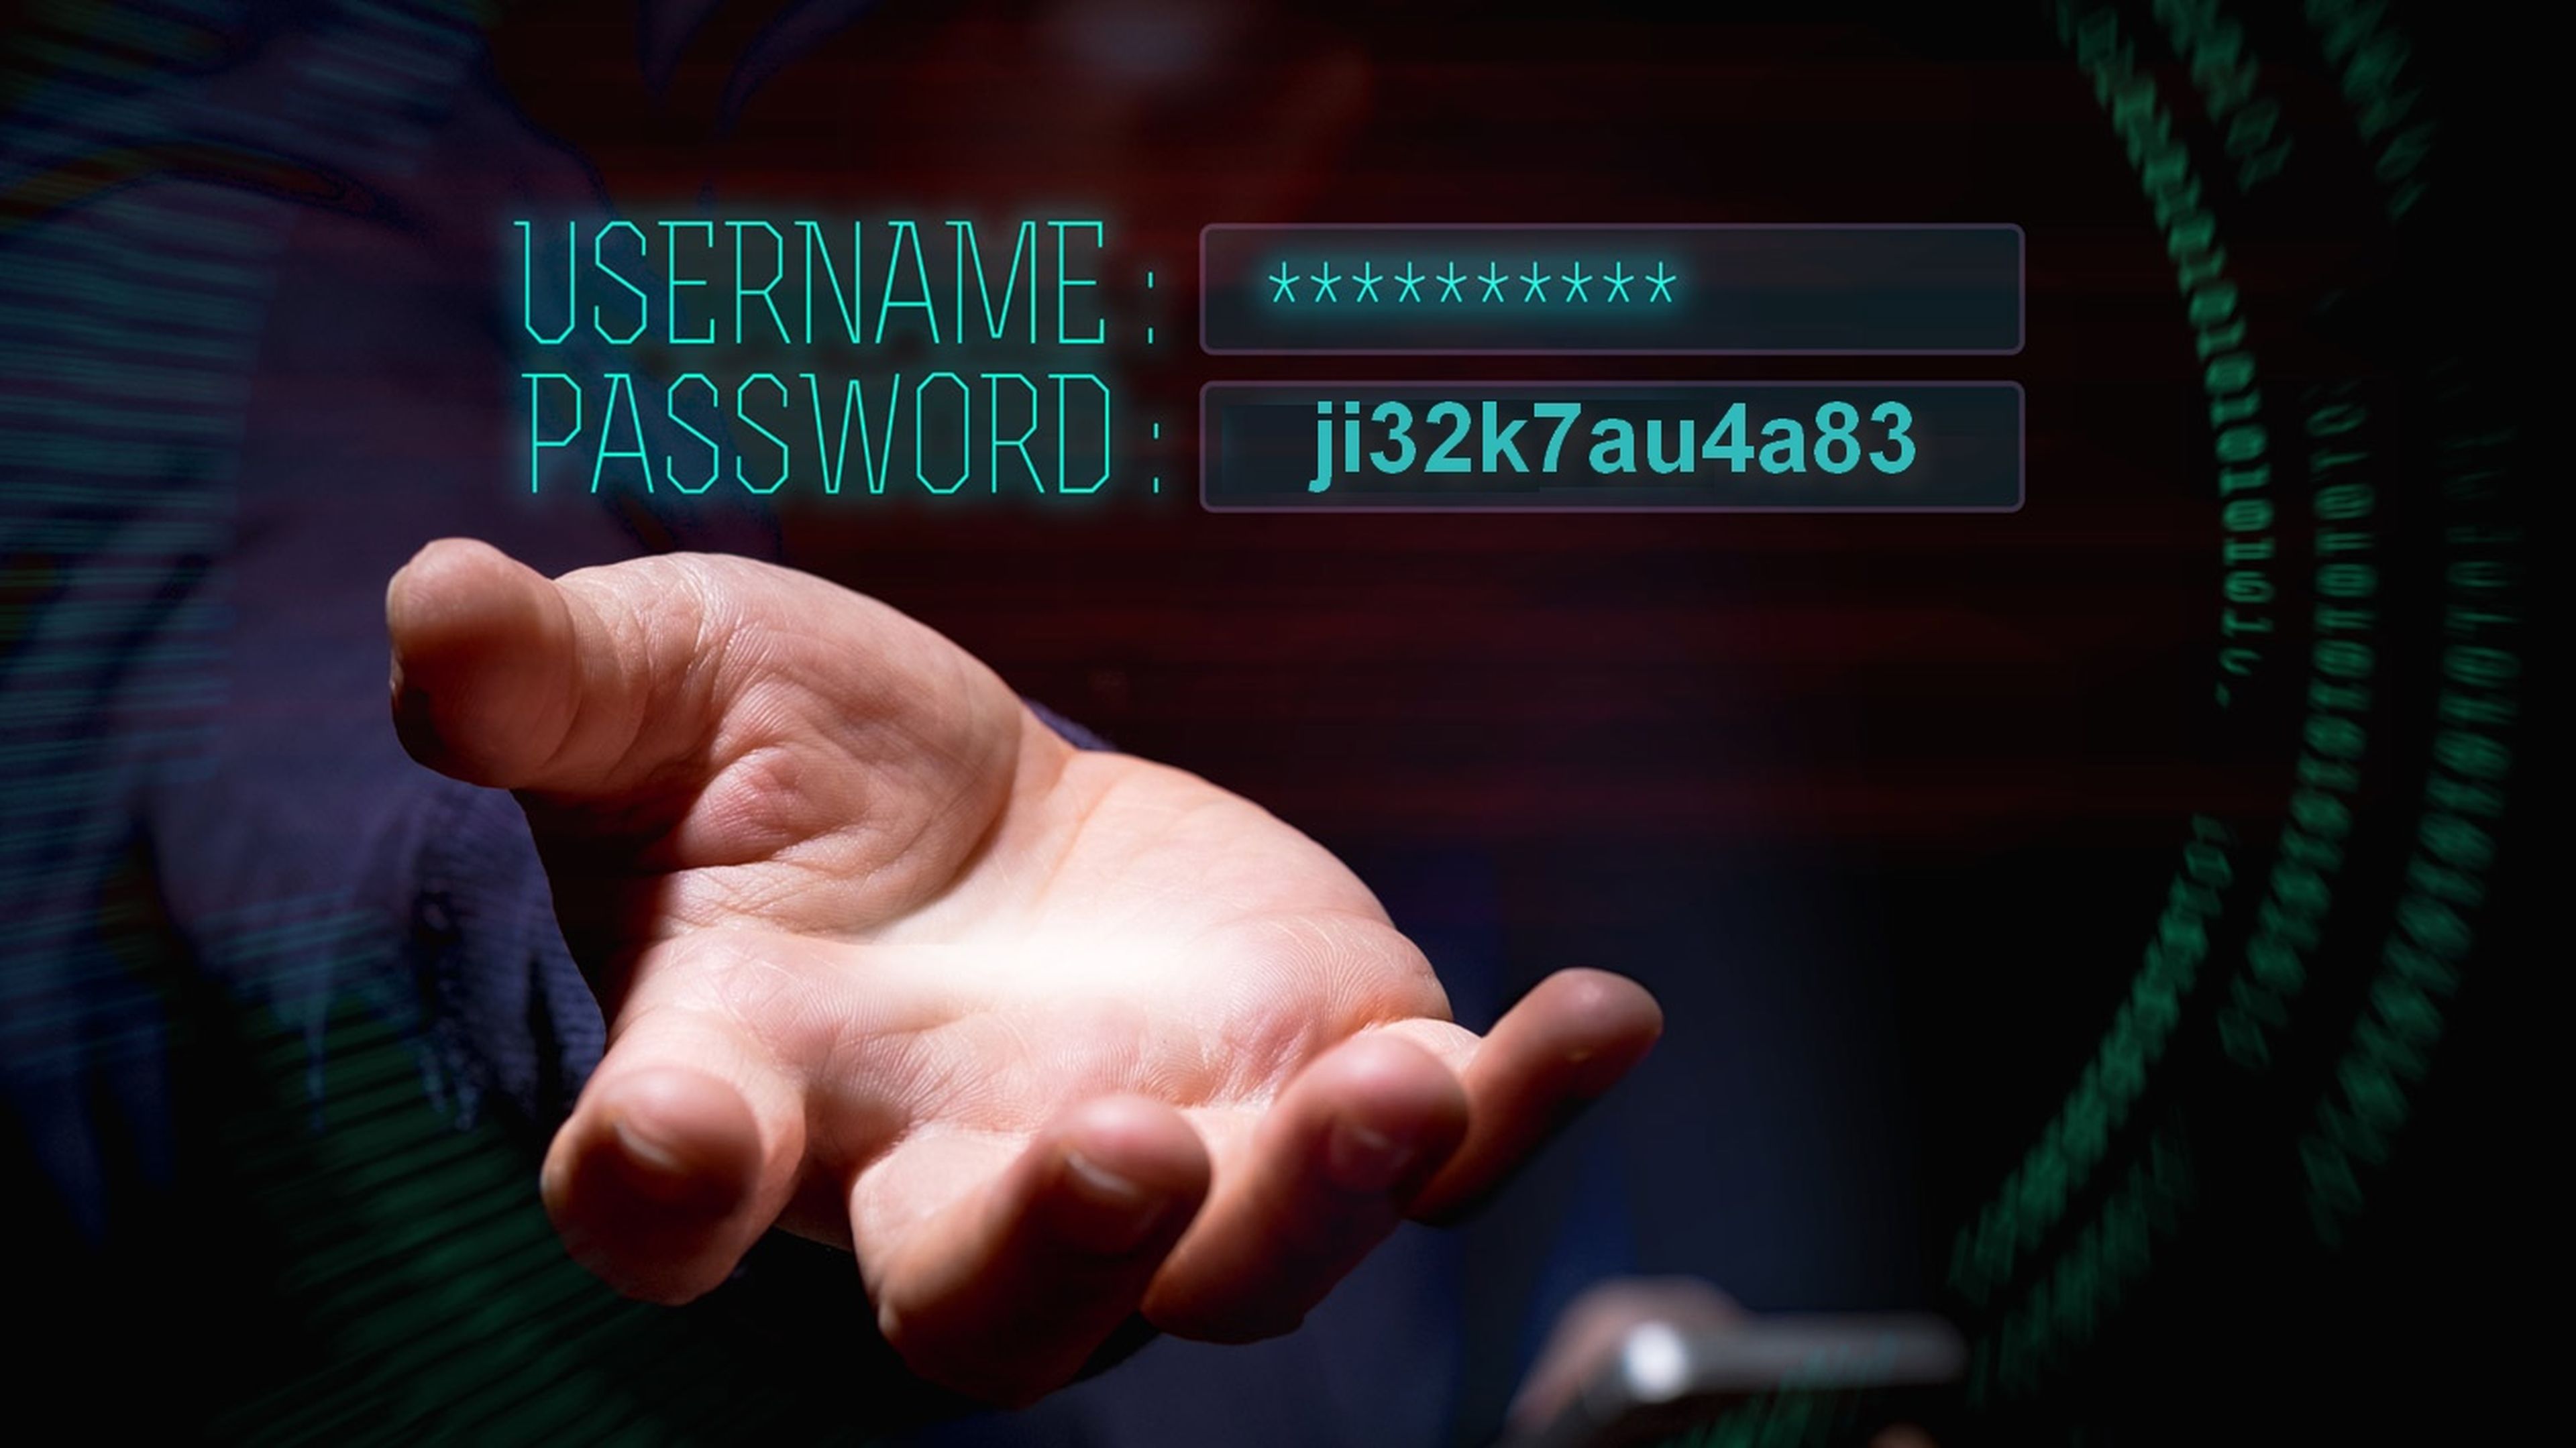 Misterios de las contraseñas: por qué la clave ji32k7au4a83 es insegura y ha sido hackeada cientos de veces